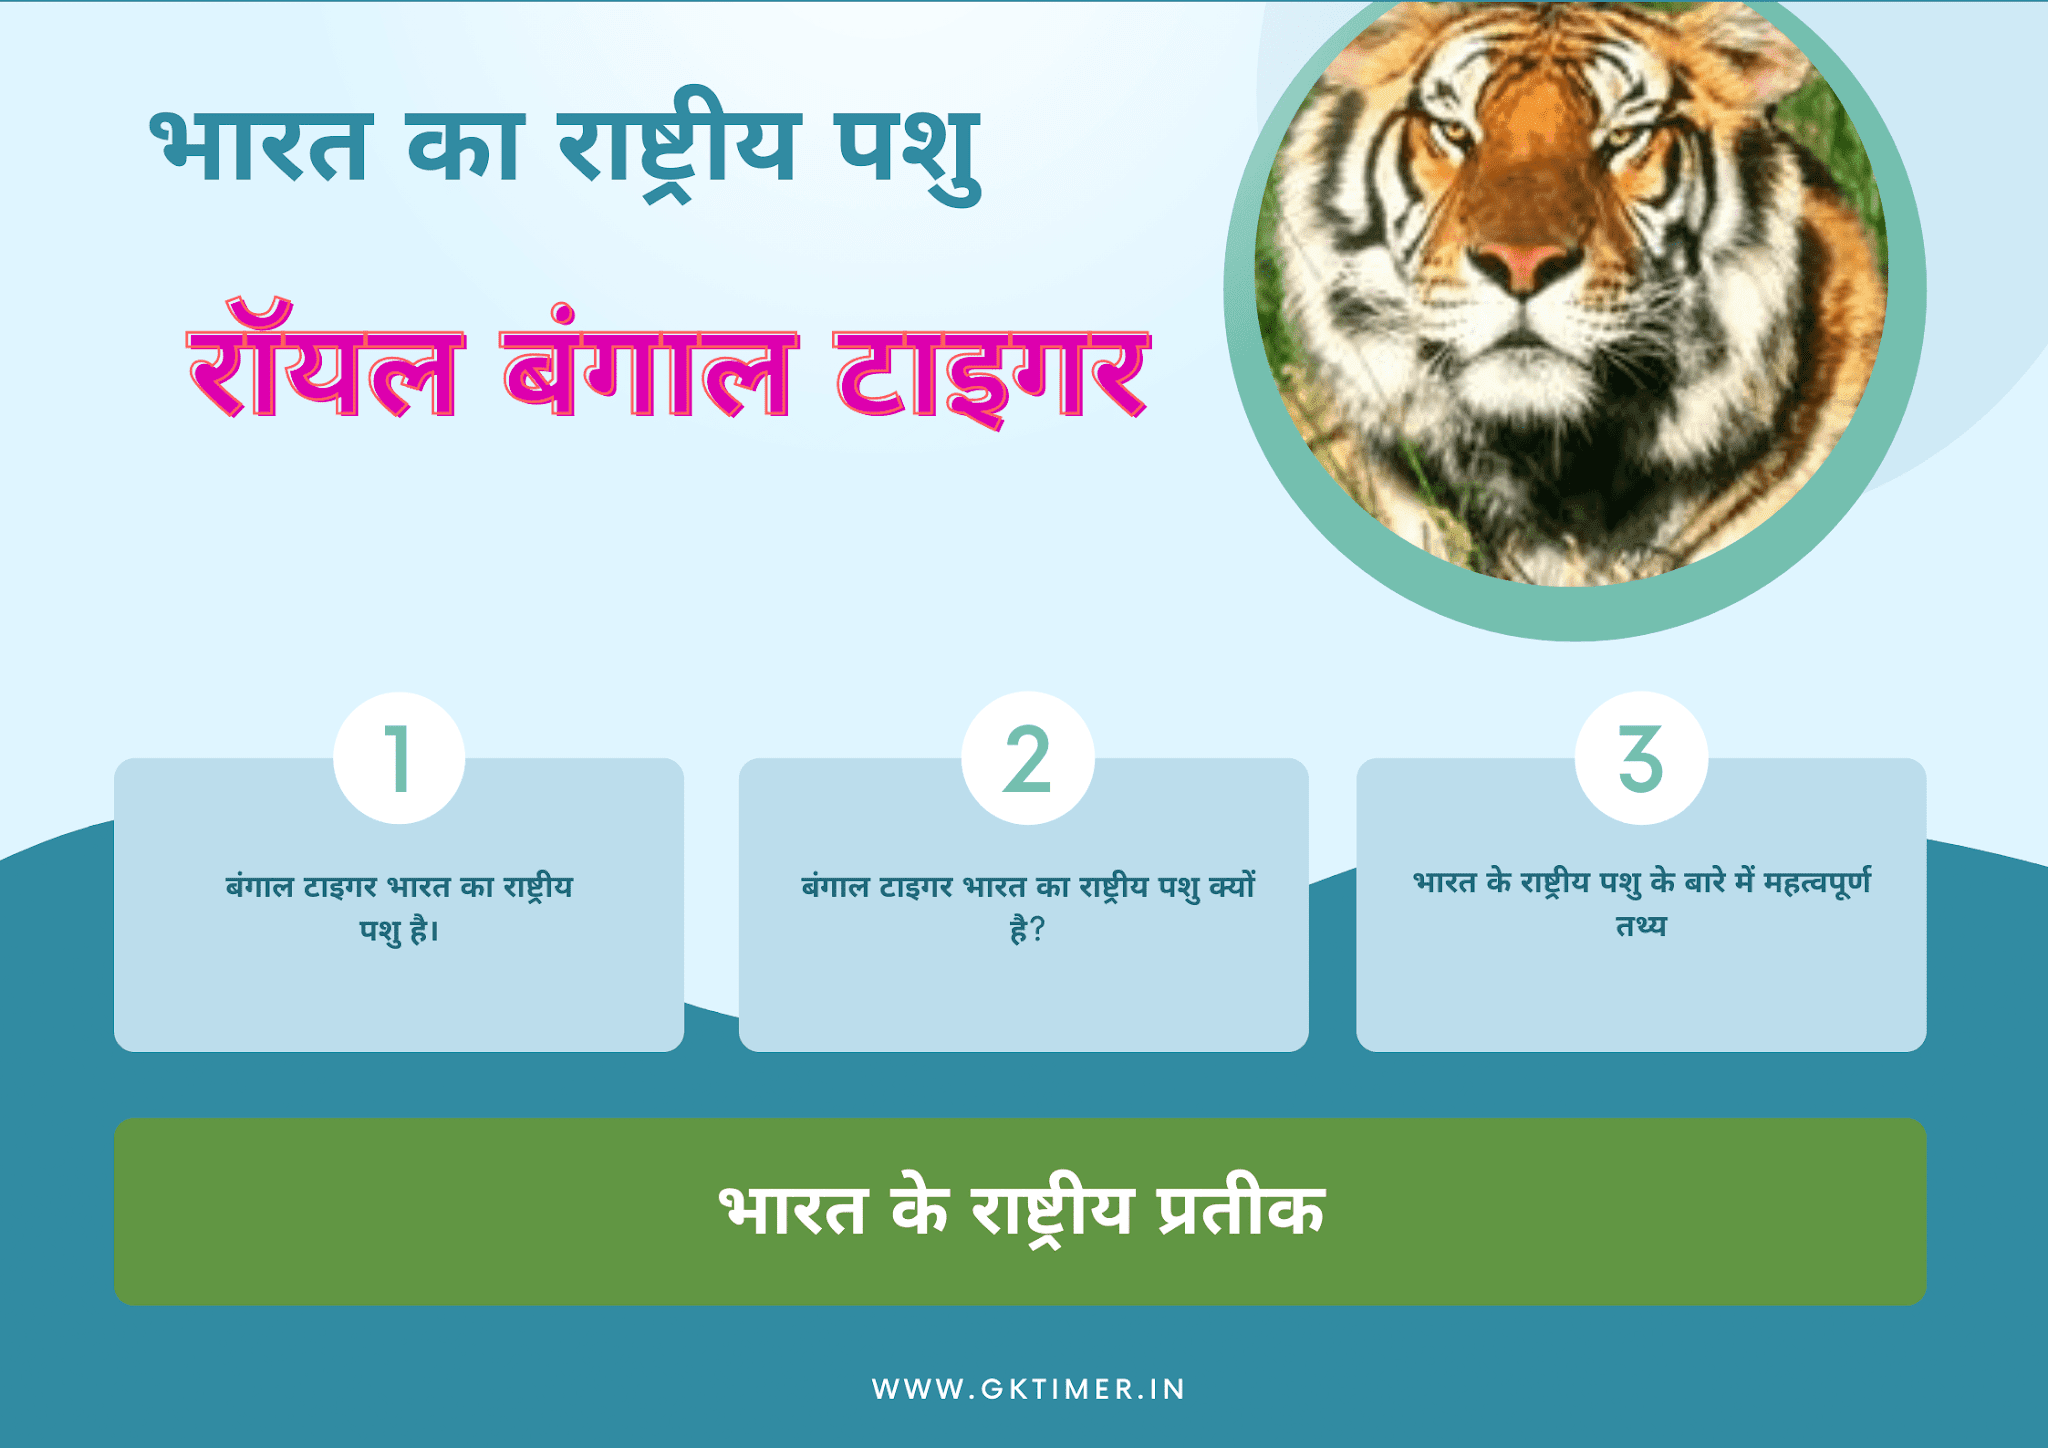 भारत का राष्ट्रीय पशु : रॉयल बंगाल टाइगर | National Animal of India in Hindi : Royal Bangal Tiger